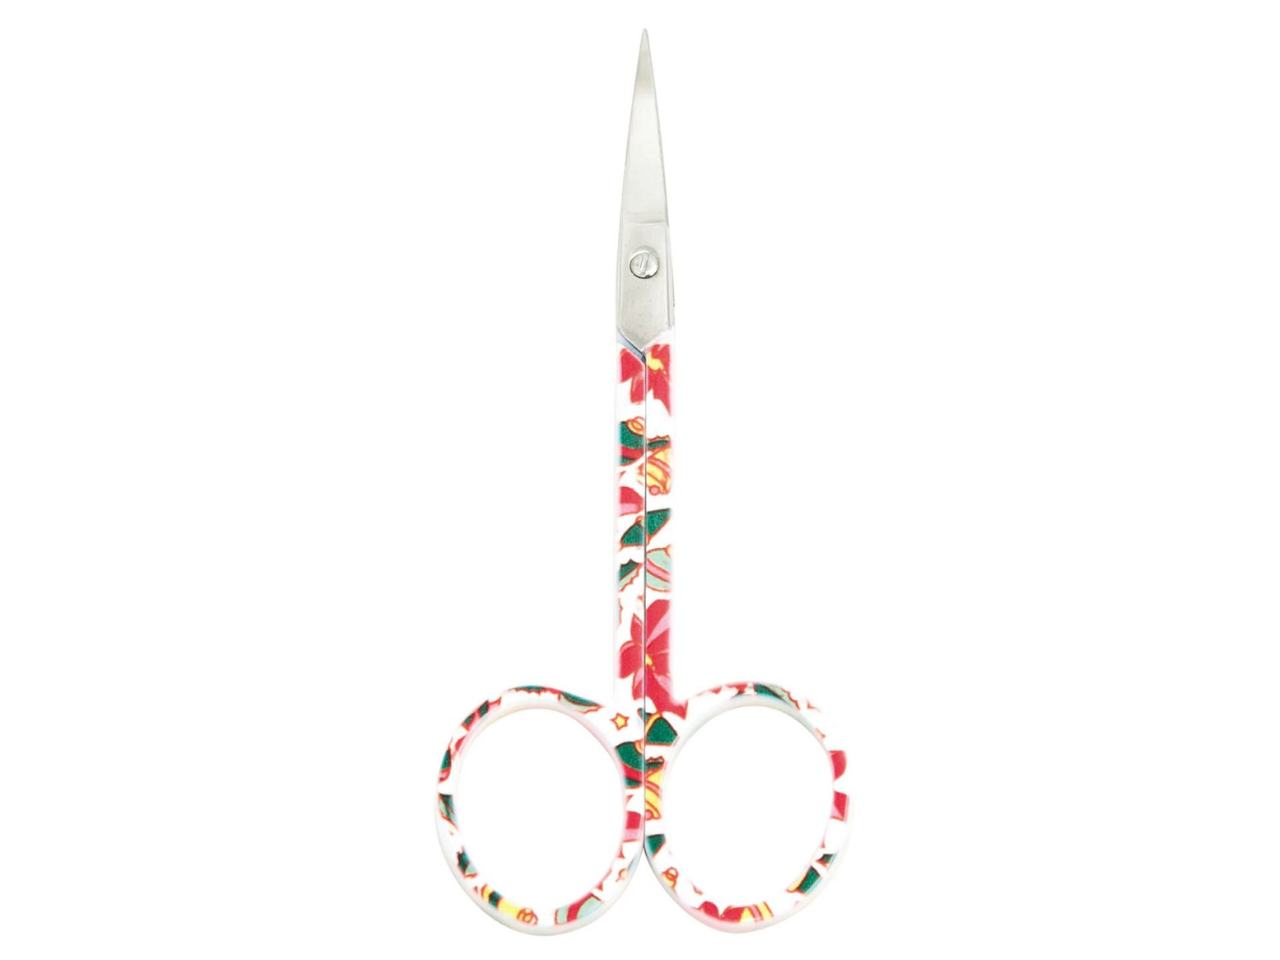 4" / 10.2cm Needlecraft Scissors, Speckled, Pink Floral